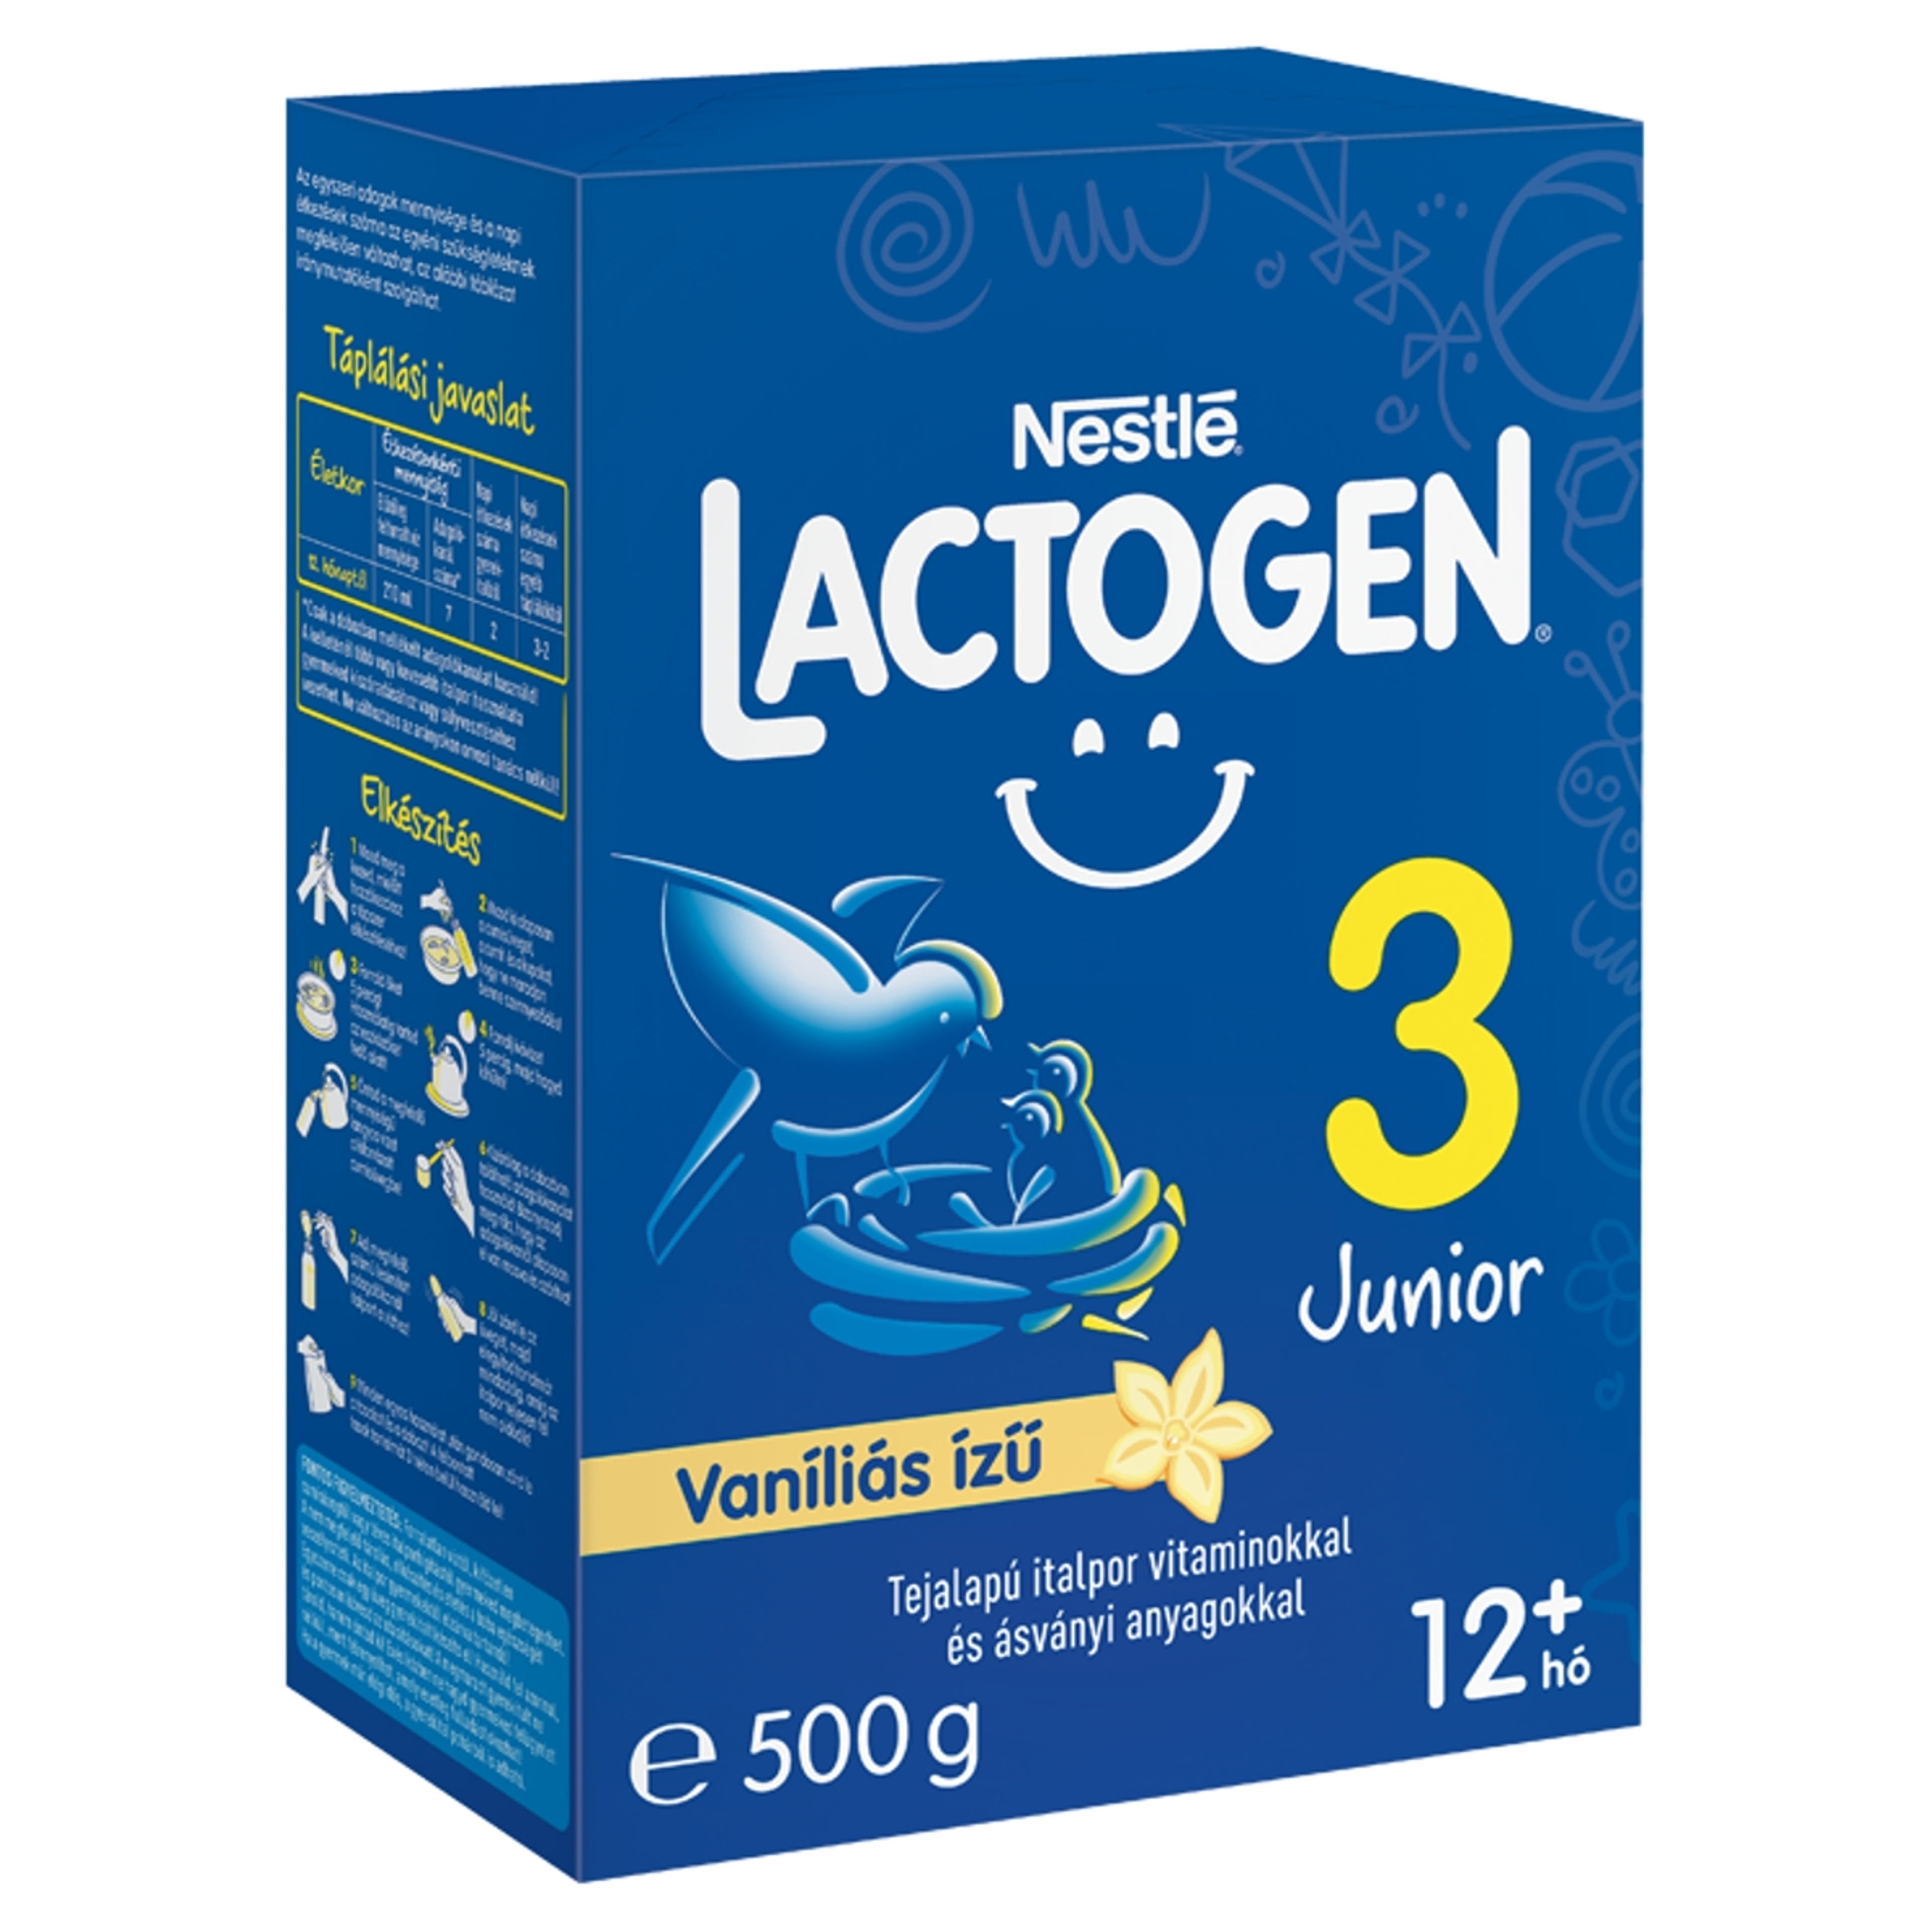 Lactogen 3 Junior tejalapú italpor vitaminokkal és ásványi anyagokkal vaníliás ízű 12 hónapos kortól - 500 g-2